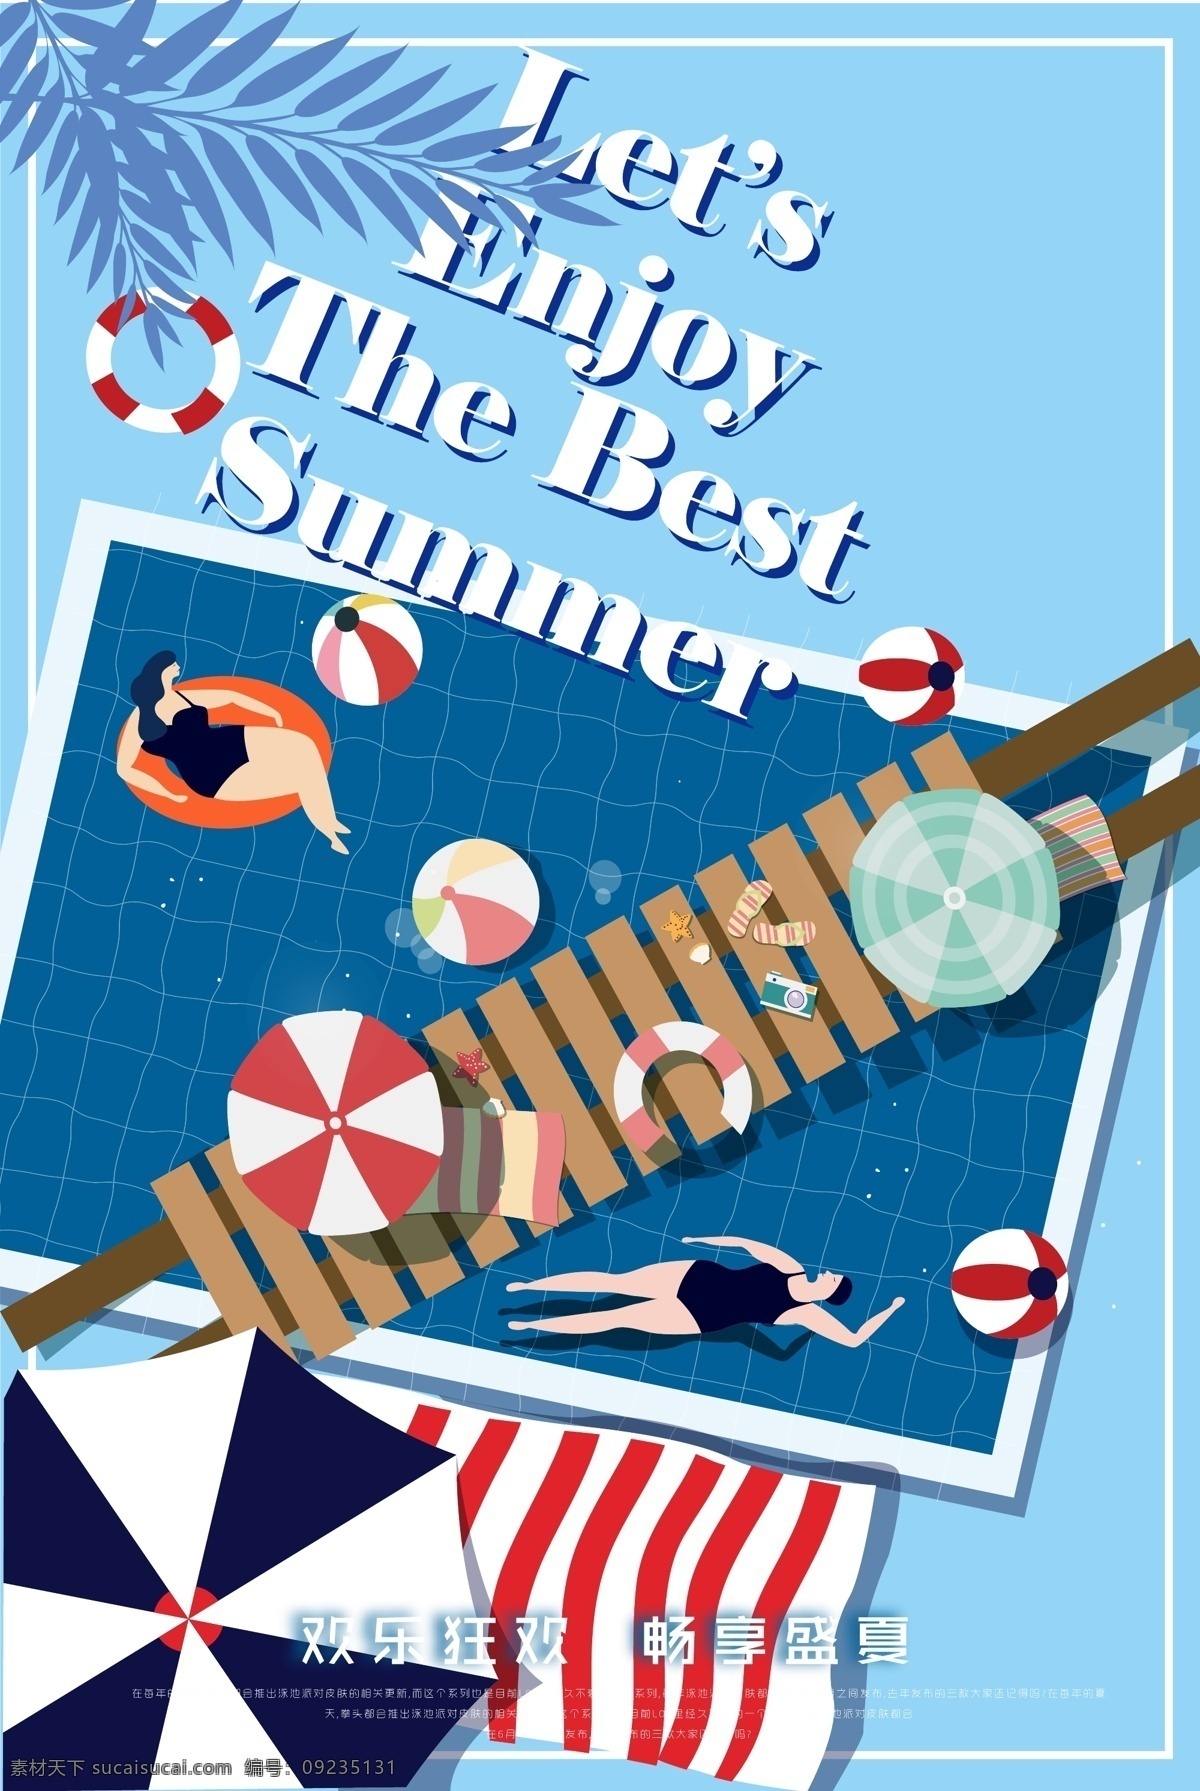 夏日游泳海报 时尚 插画风 泳池 派对 我爱夏日 海报 培训 游泳